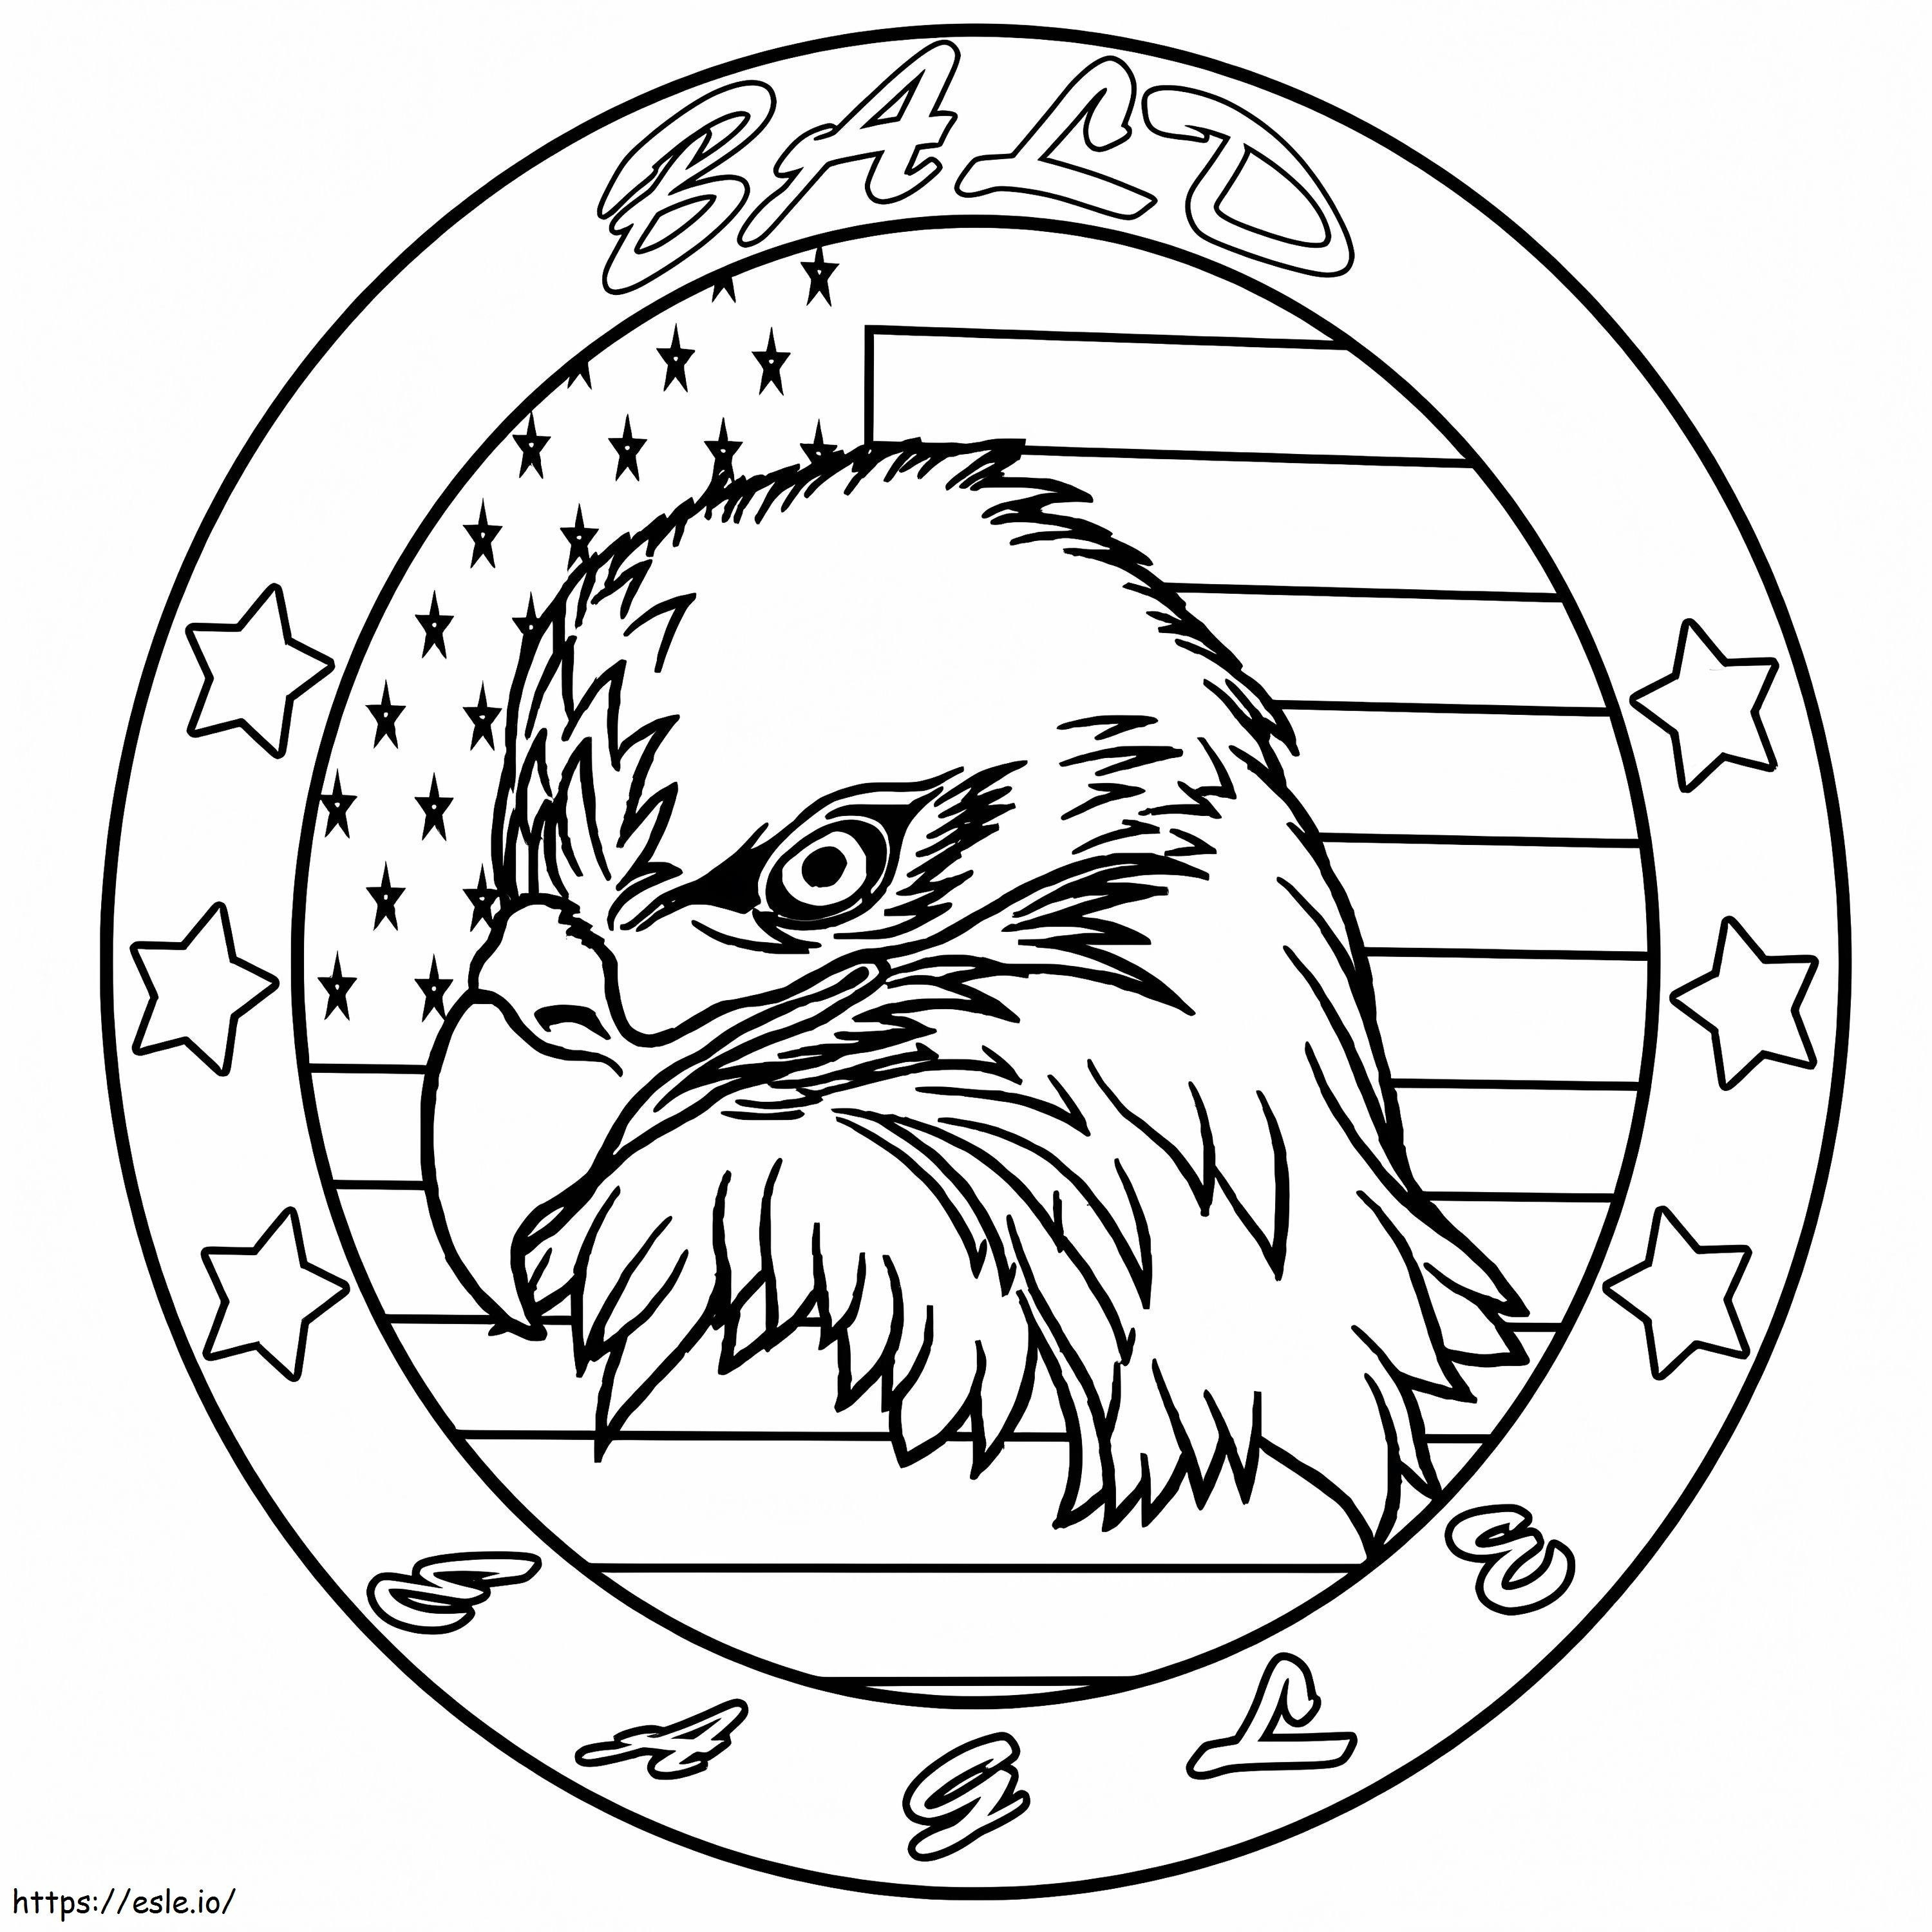 símbolo da águia para colorir